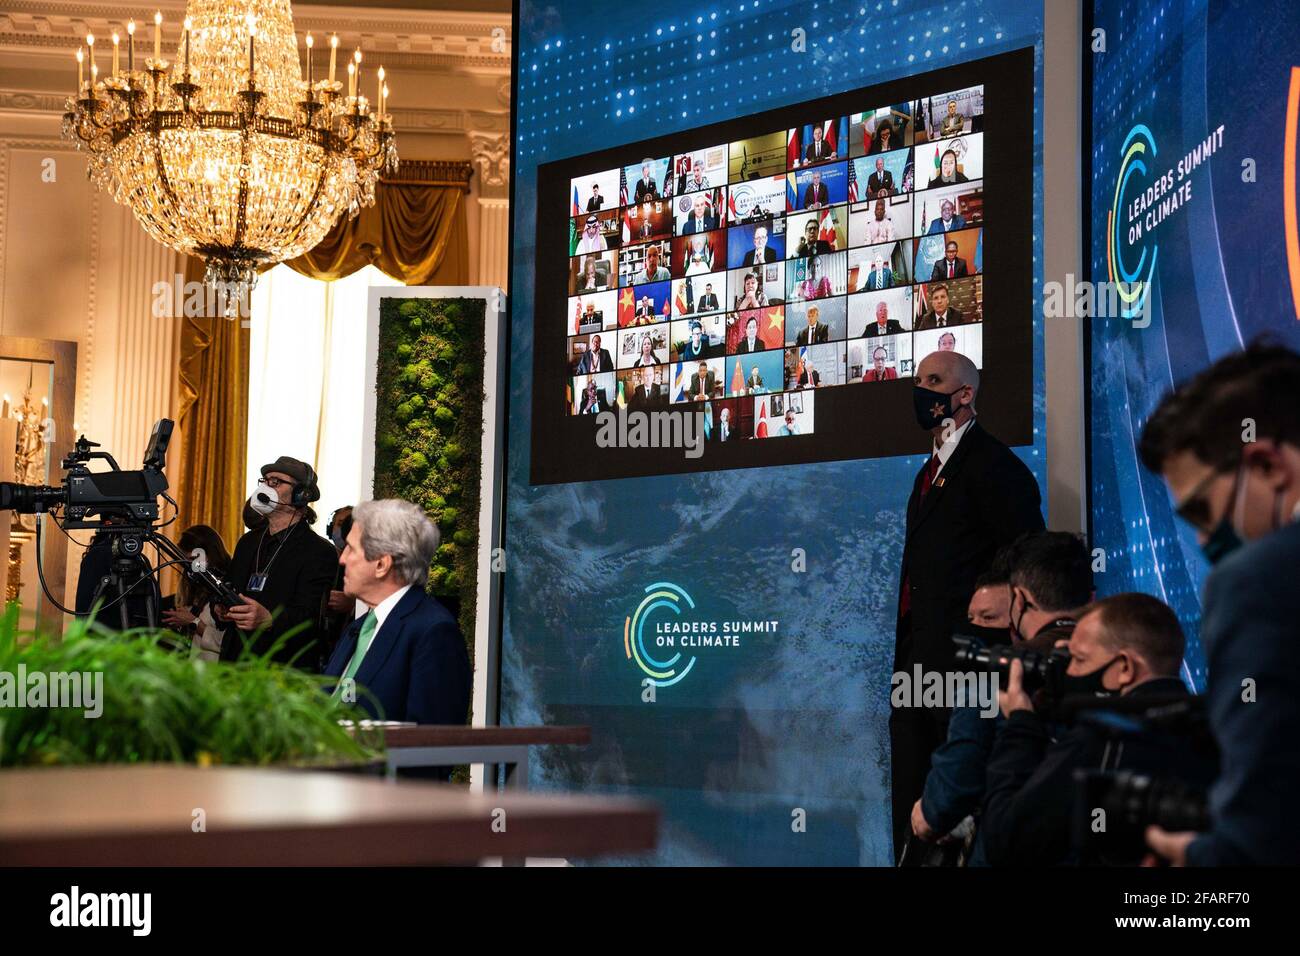 Weltführer werden auf einem Bildschirm im Ostsaal des Weißen Hauses während des virtuellen Klimagipfels der Staats- und Regierungschefs am Freitag, dem 23. April 2021 in Washington, DC, angezeigt. Poolfoto von Anna Moneymaker/UPI Stockfoto